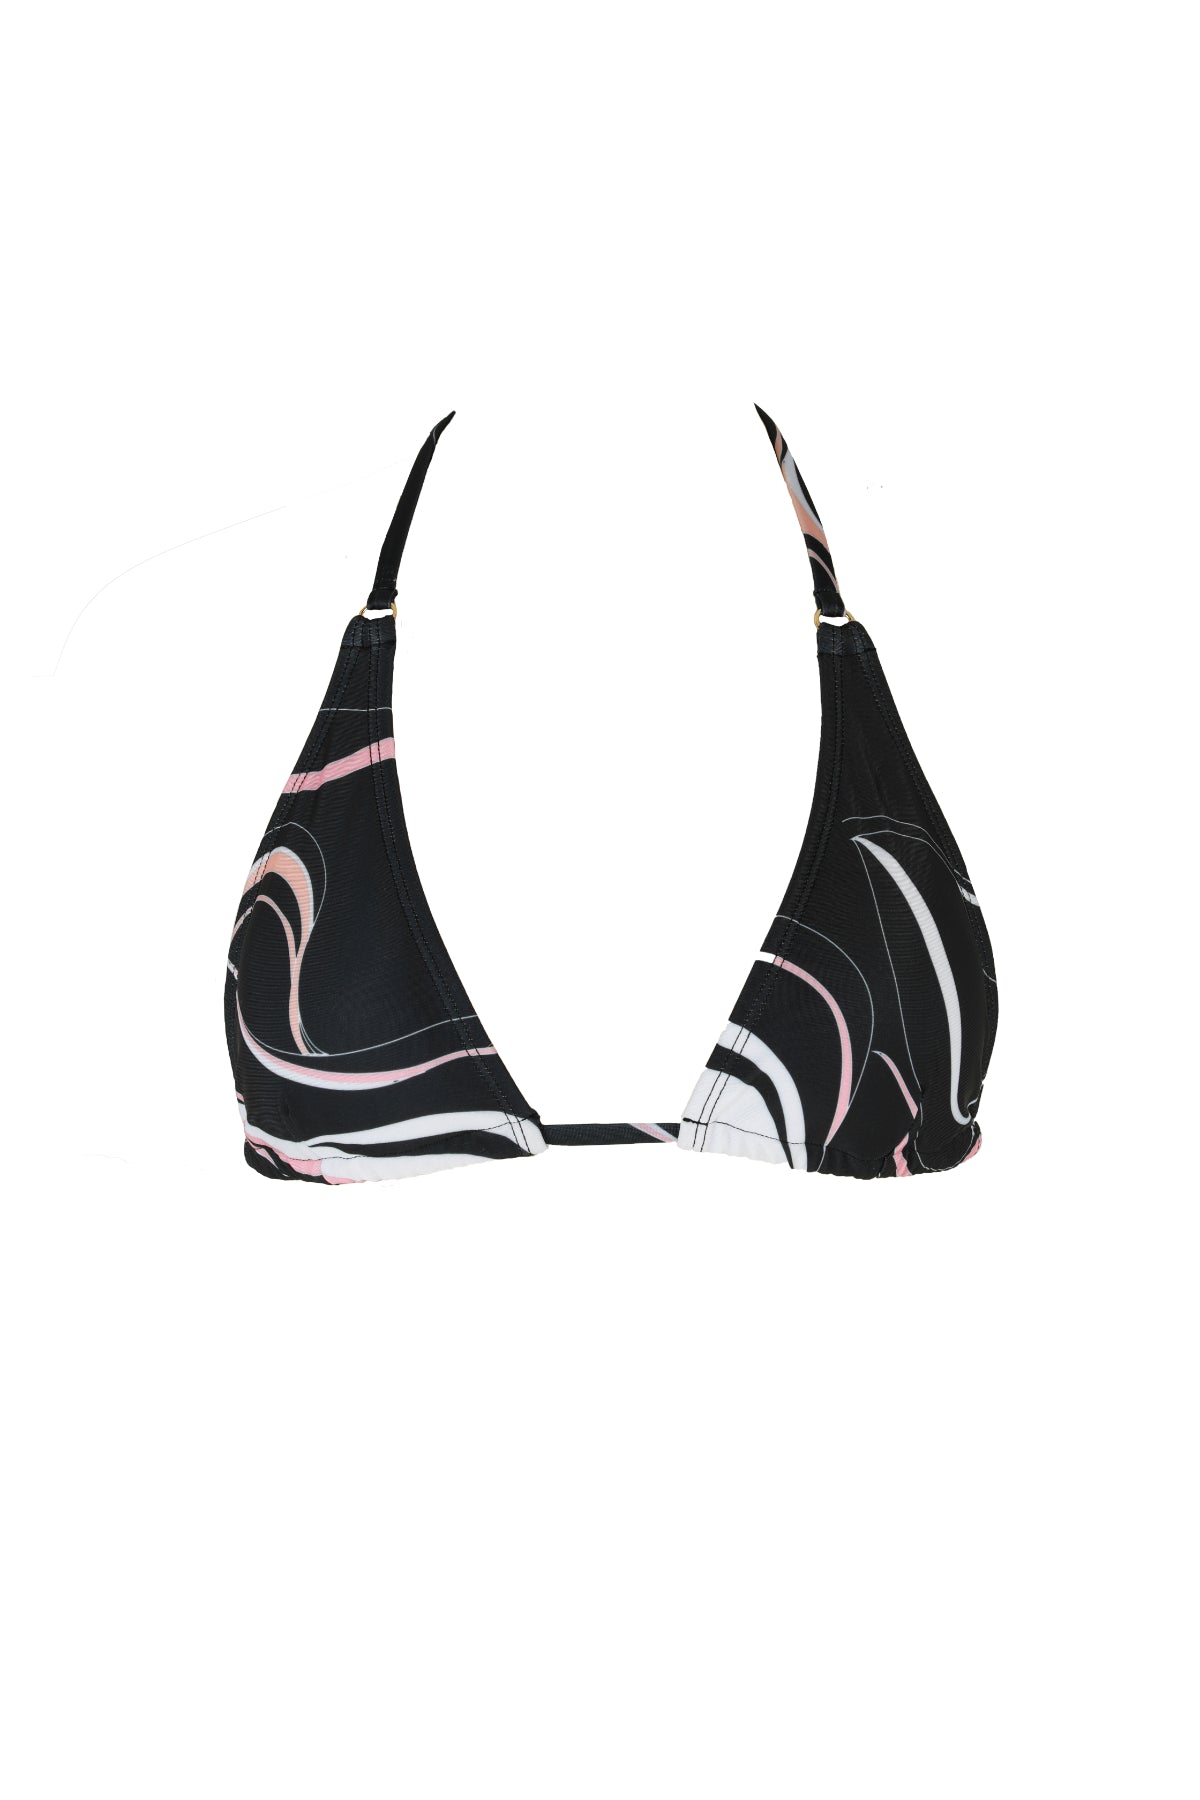 coral print red triangle top bikini luxury swimwear koraru sustainable swimwear halther bikini top